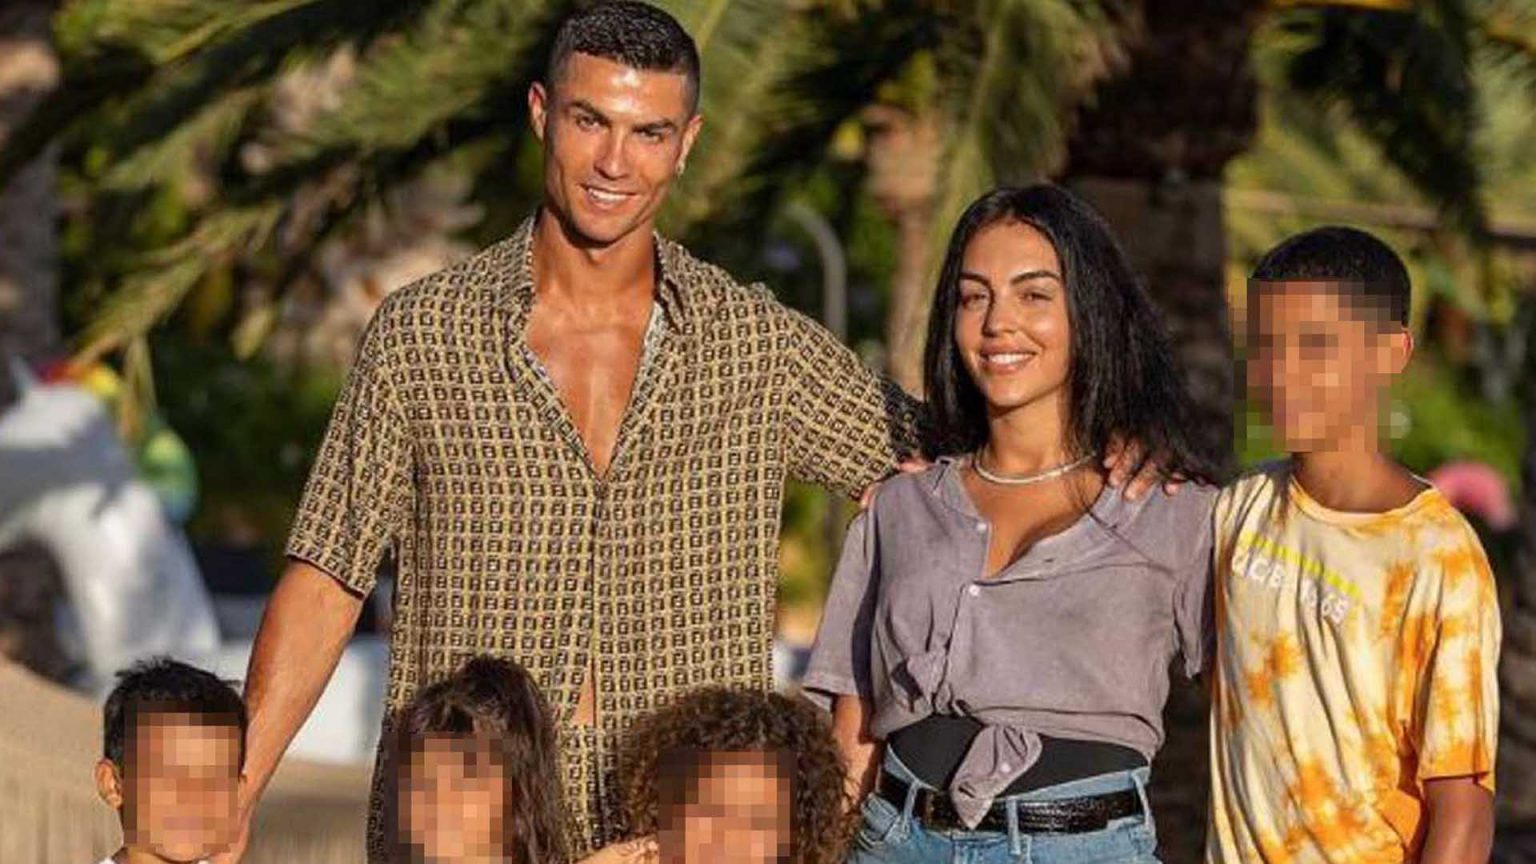 Georgina Rodríguez y Cristiano Ronaldo: todas las fotos de sus lujosas vacaciones en Mallorca